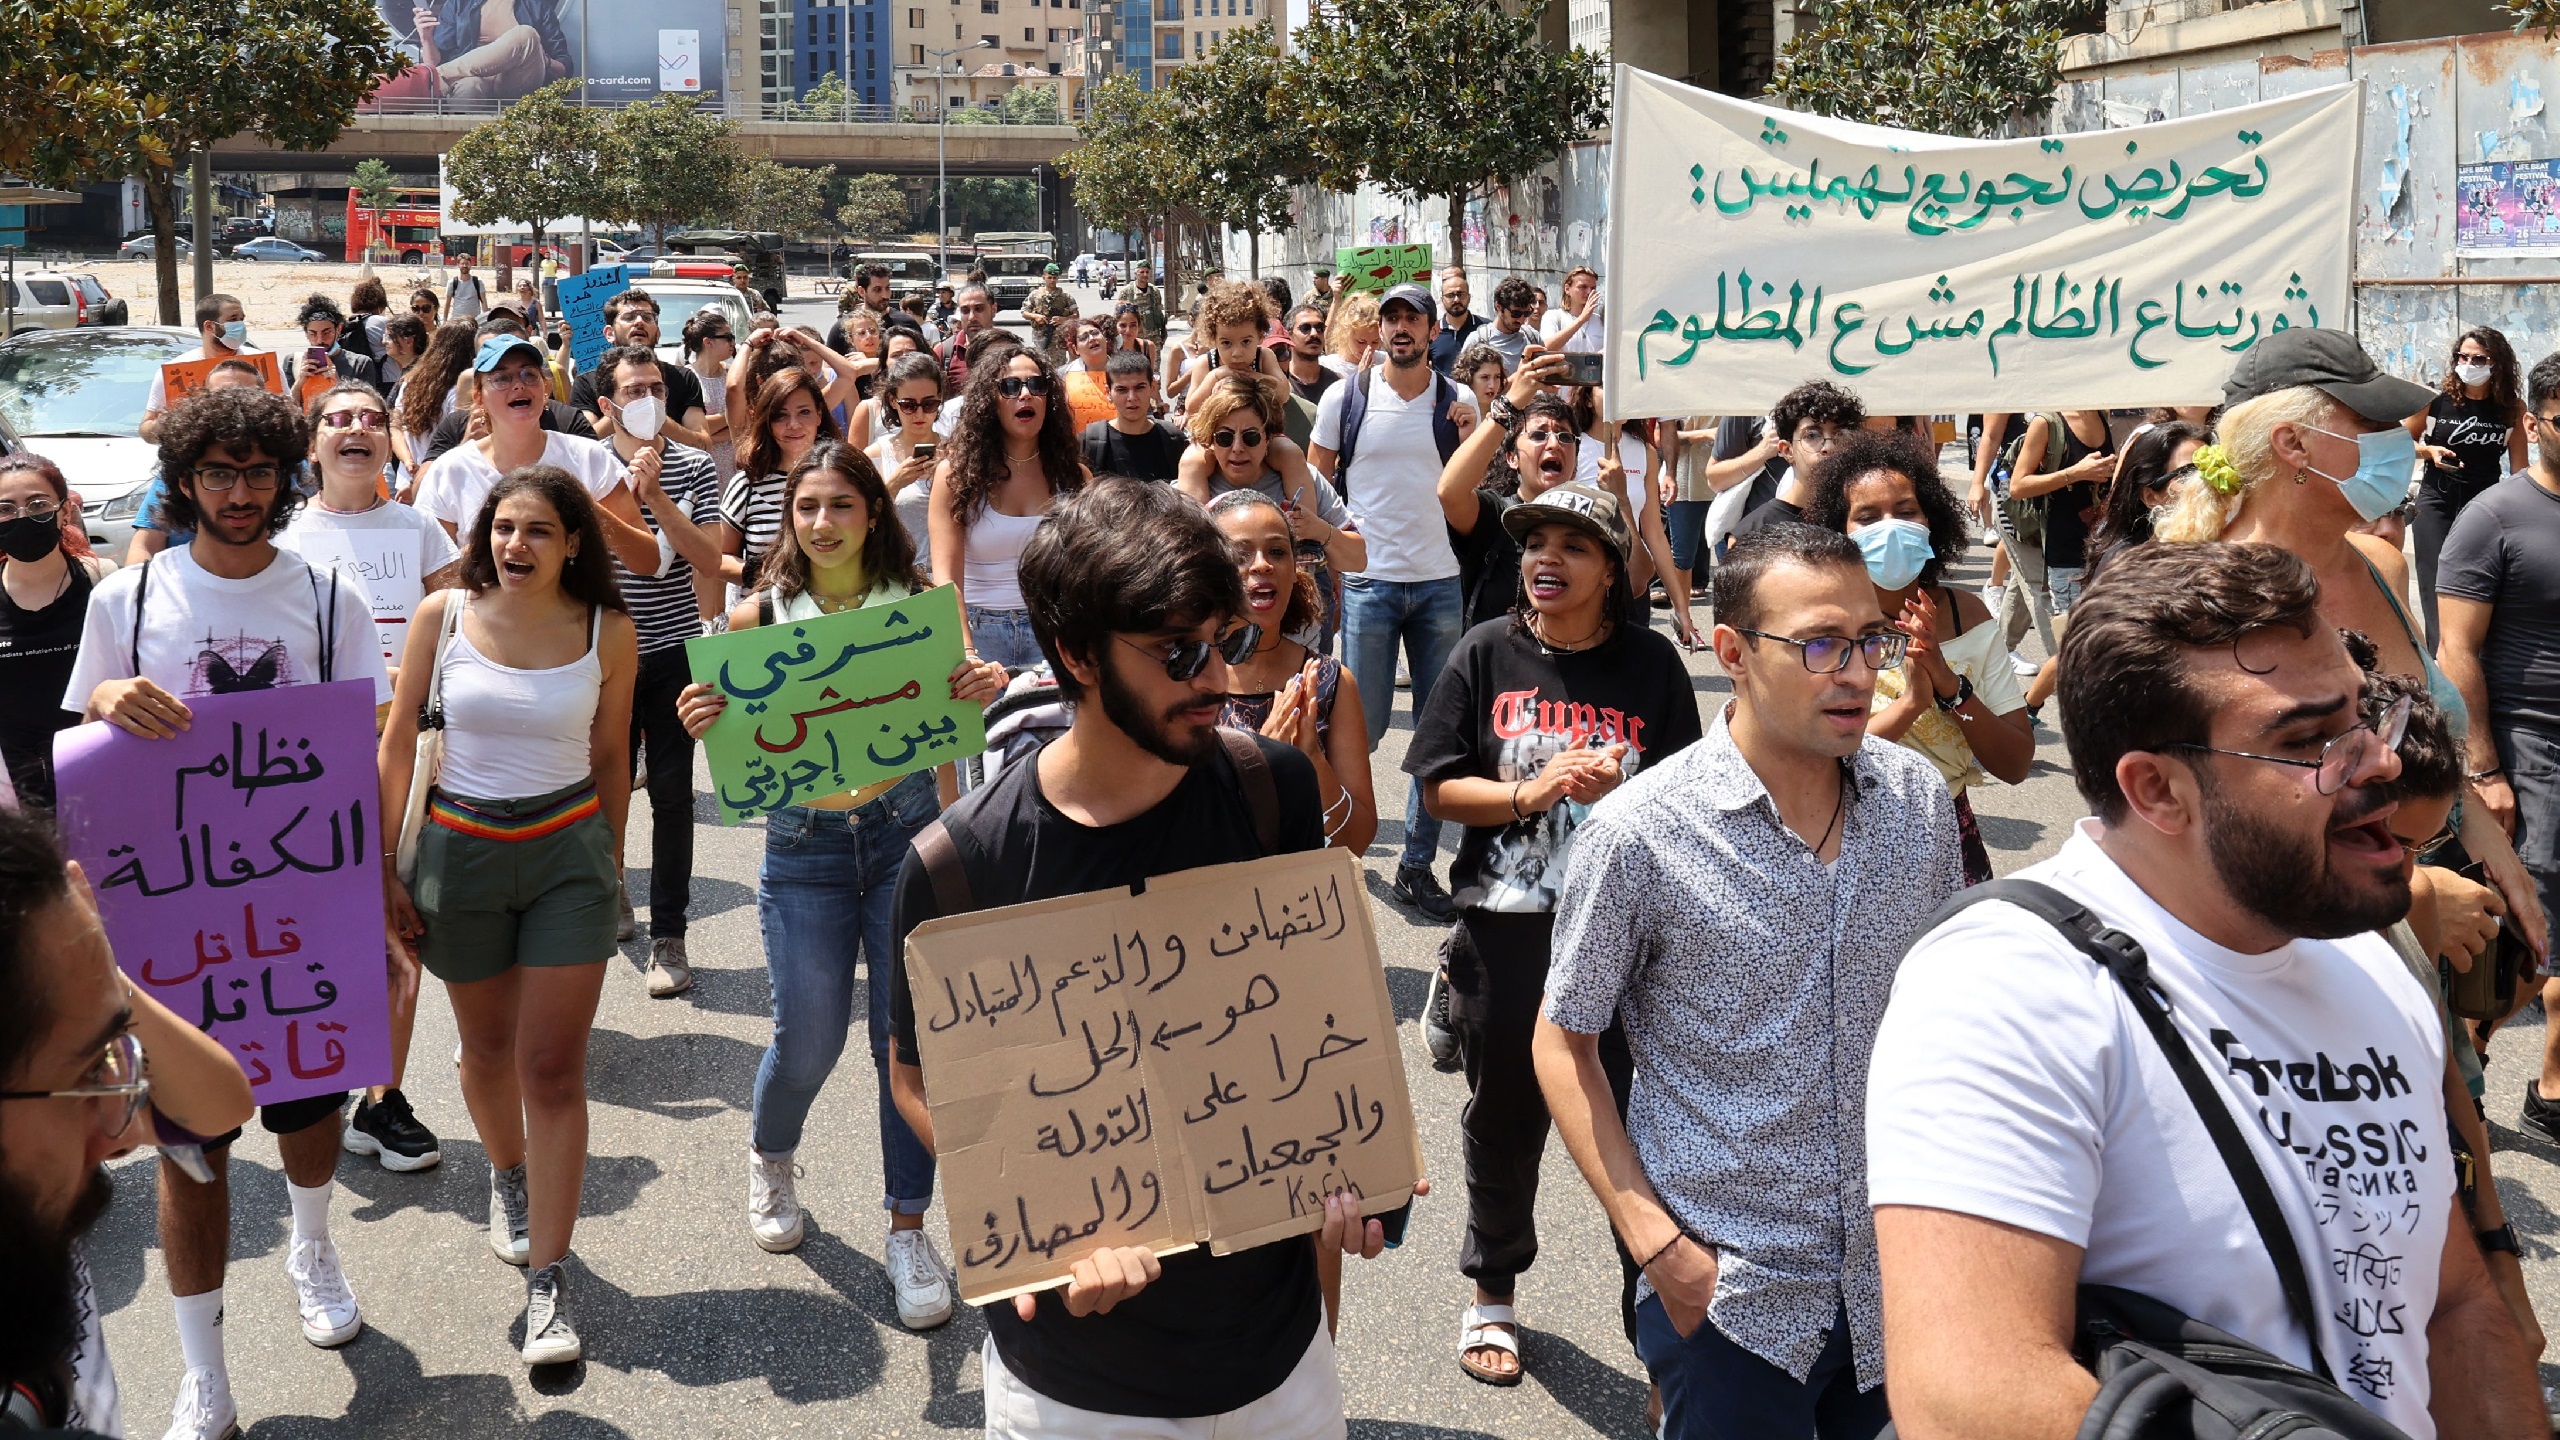 Despite Win in Courts, LGBT Community Suffers Discrimination, Abuse in Lebanon